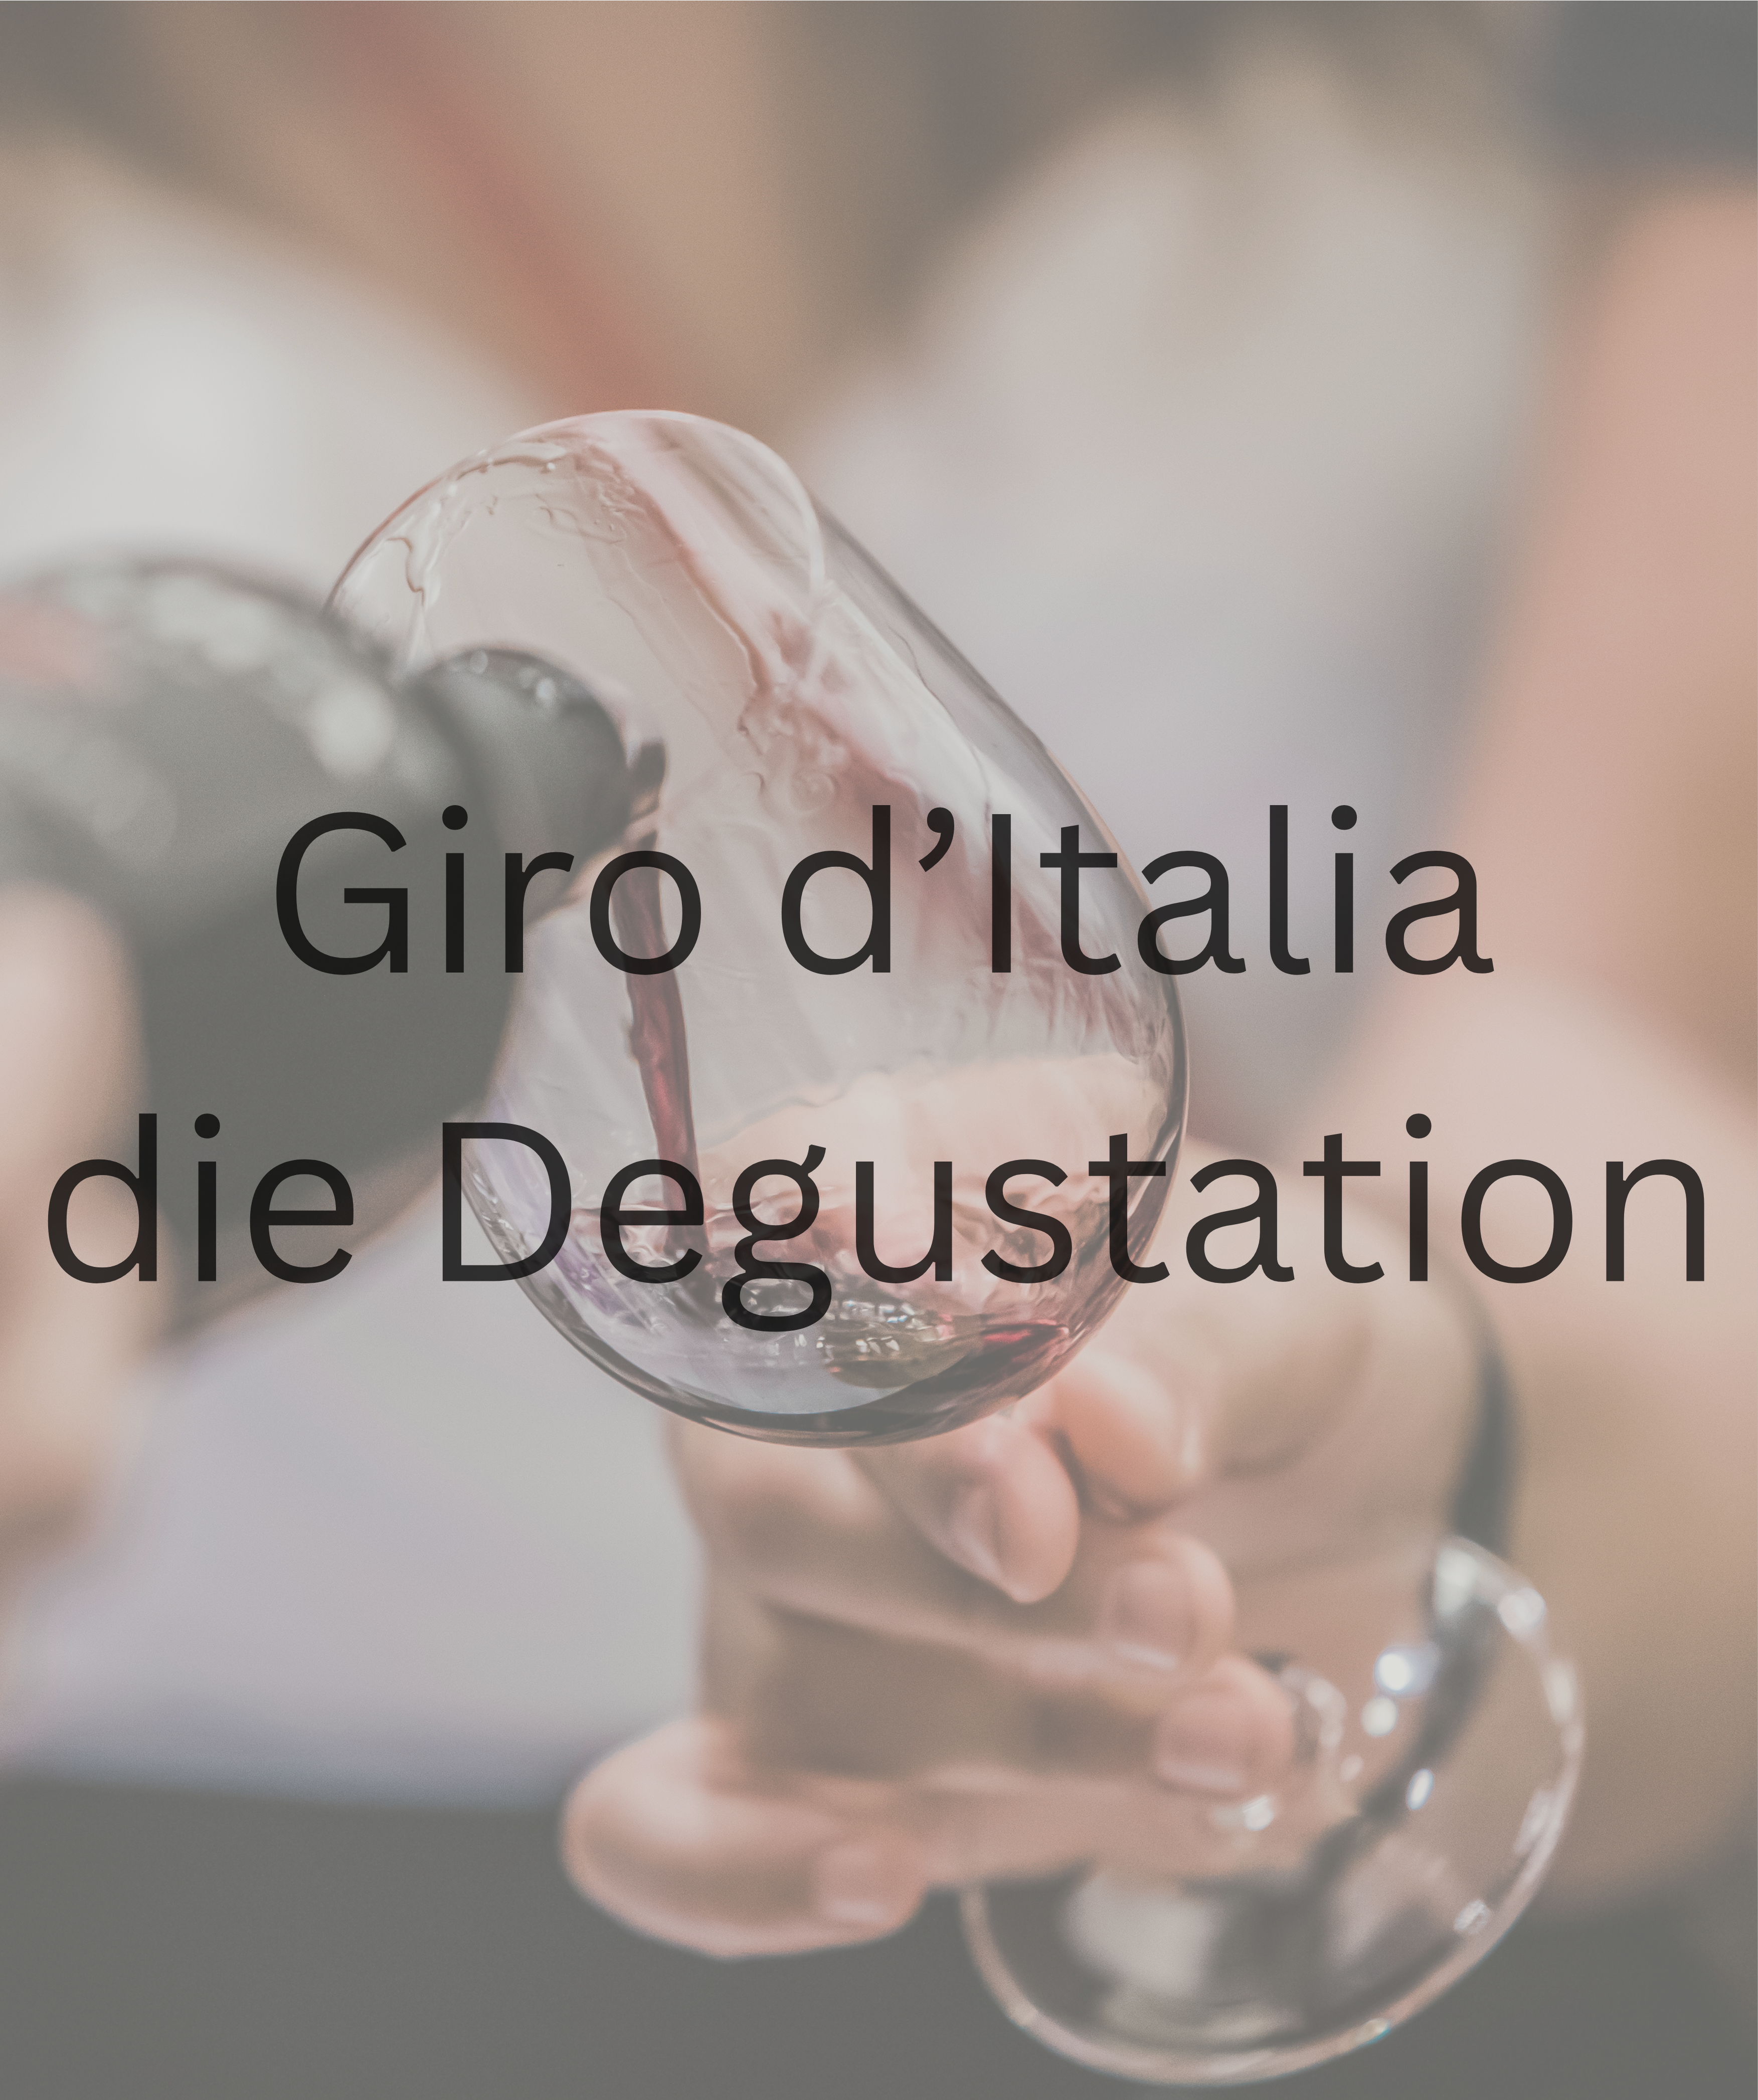 La degustazione a Zurigo, Berna, Lucerna e San Gallo: Giro d'Italia